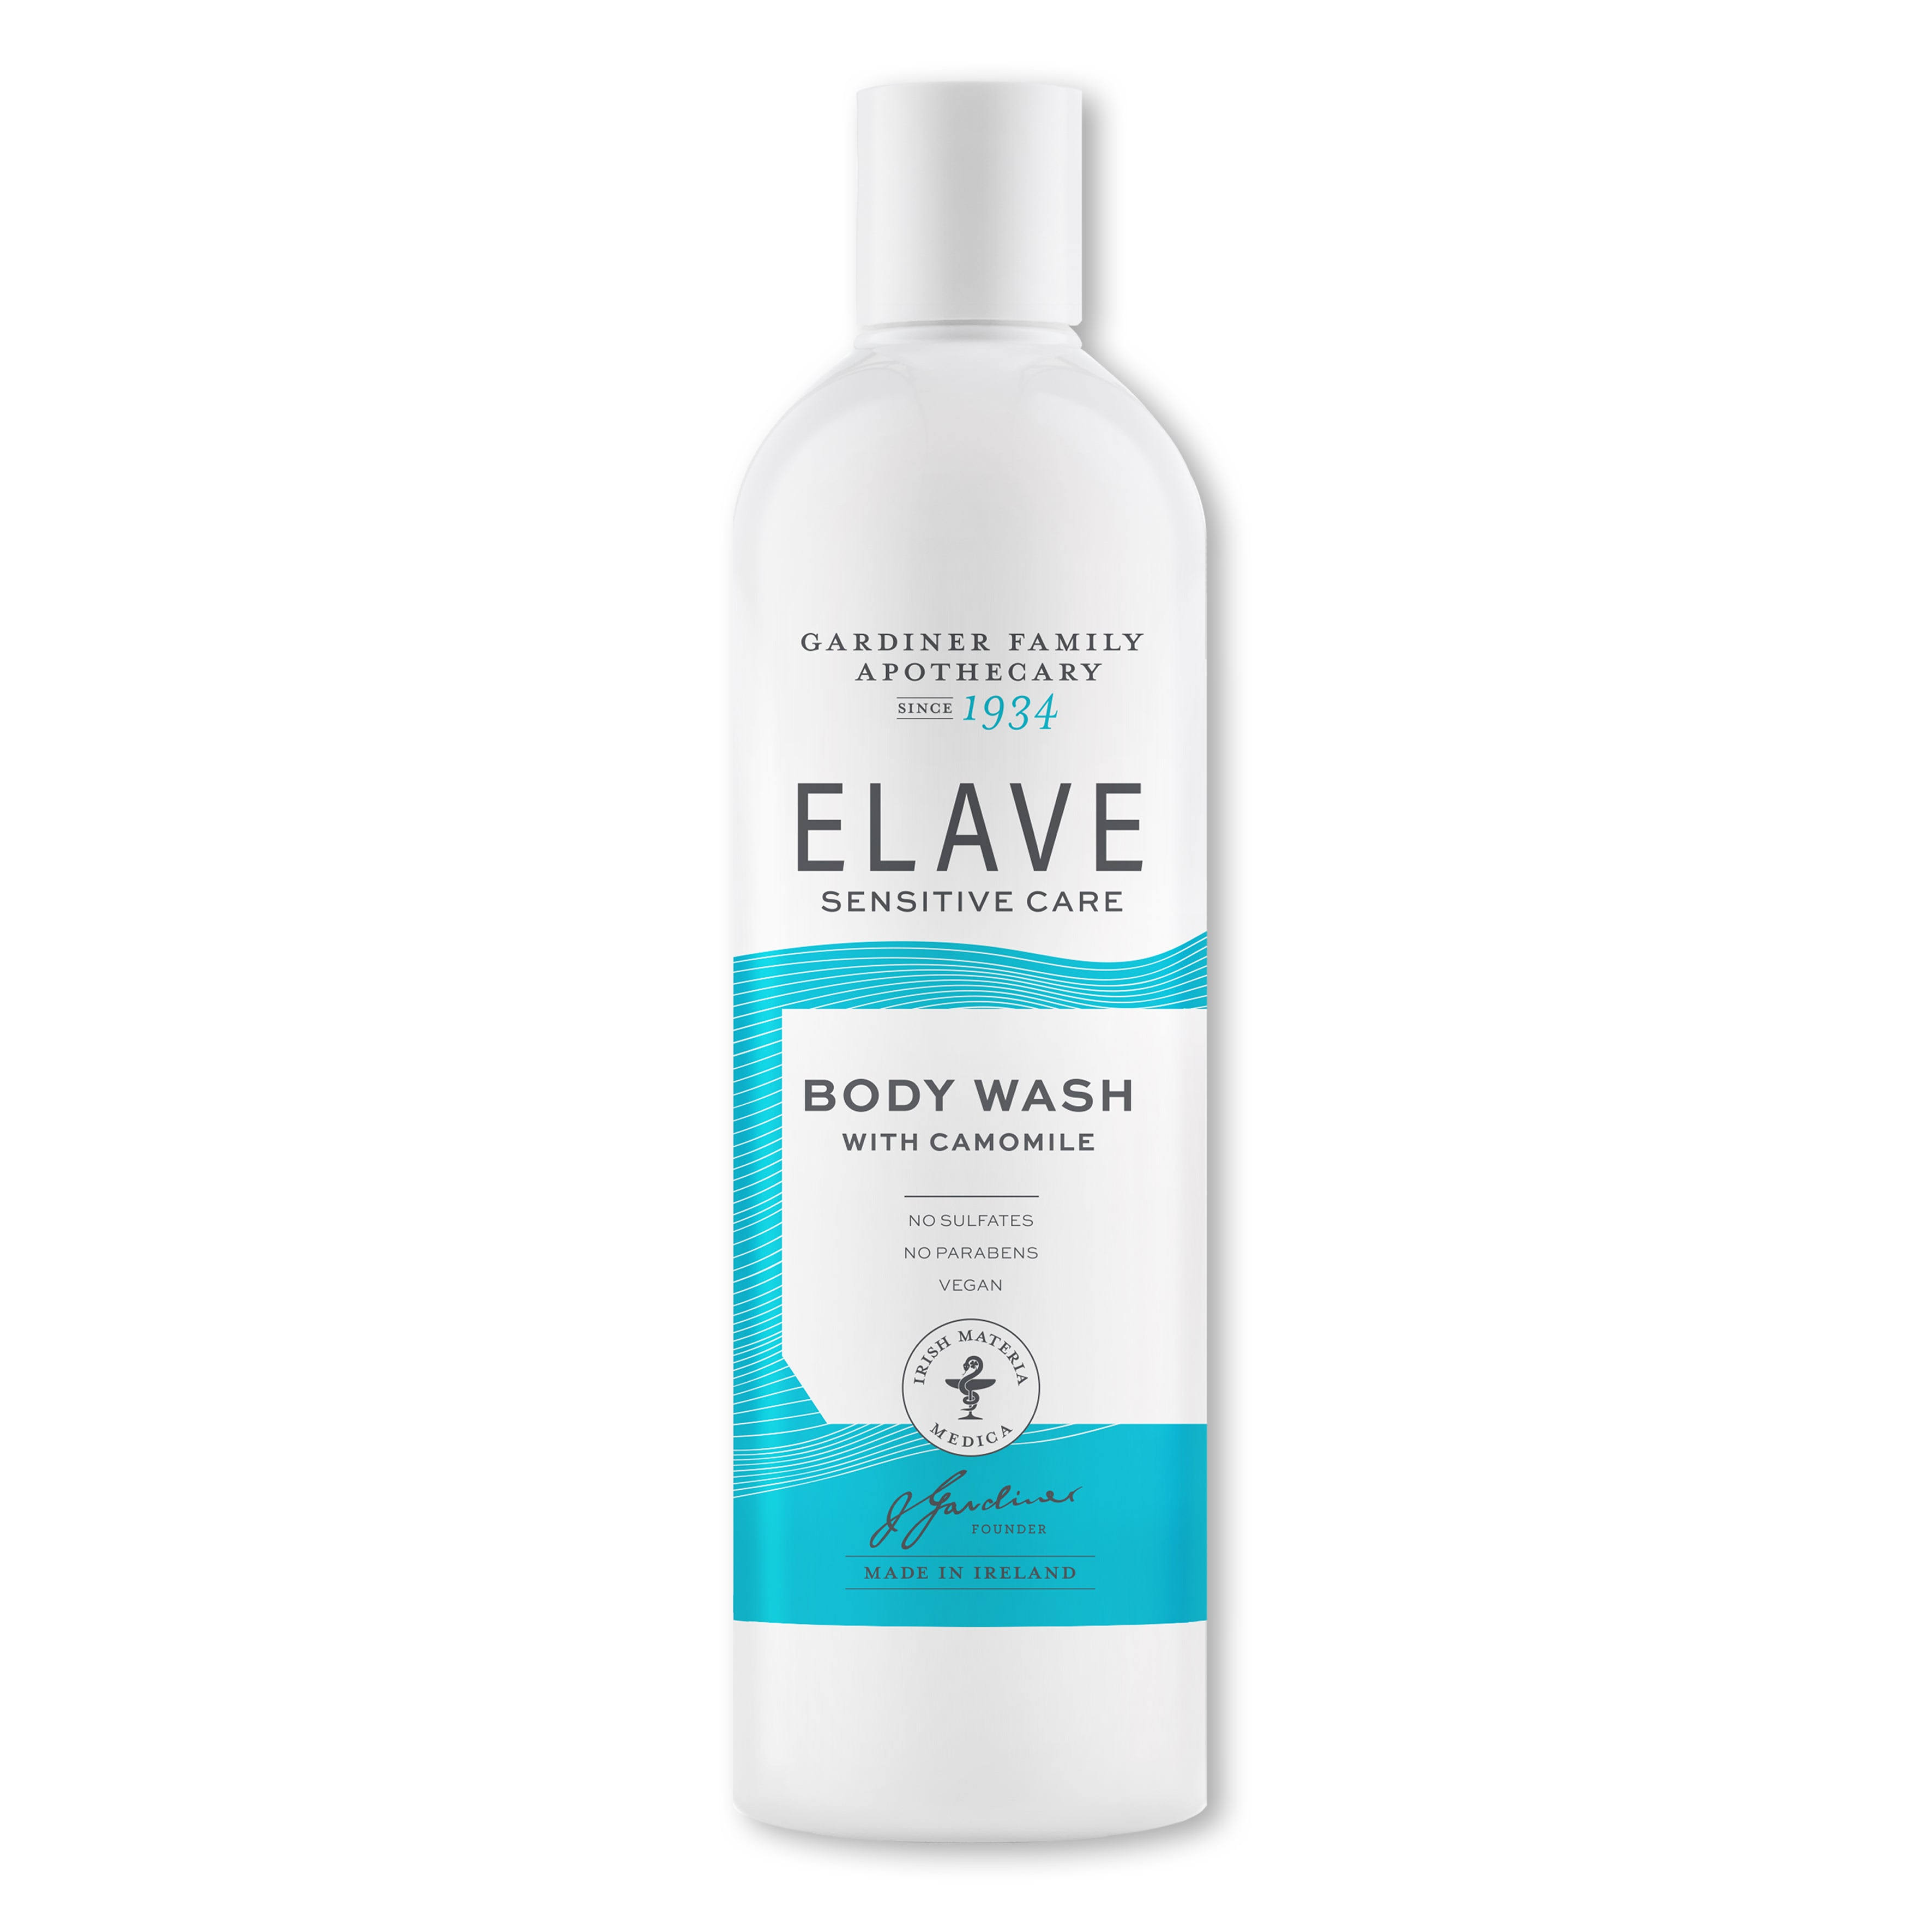 Elave Body Wash - 1 Liter